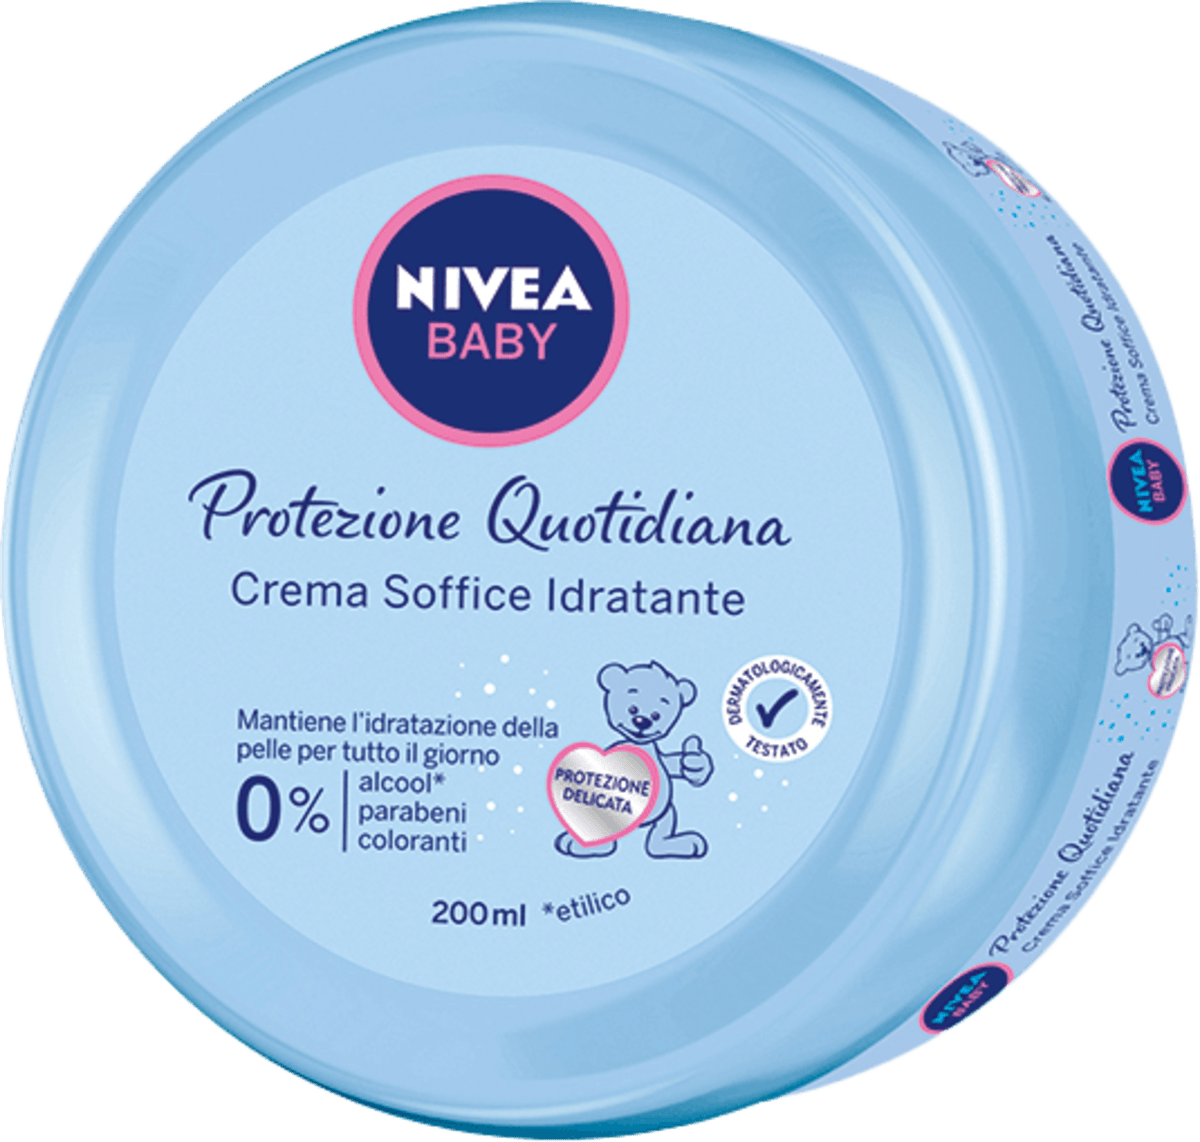 NIVEA BABY Crema soffice idratante protezione quotidiana, 200 ml Acquisti  online sempre convenienti